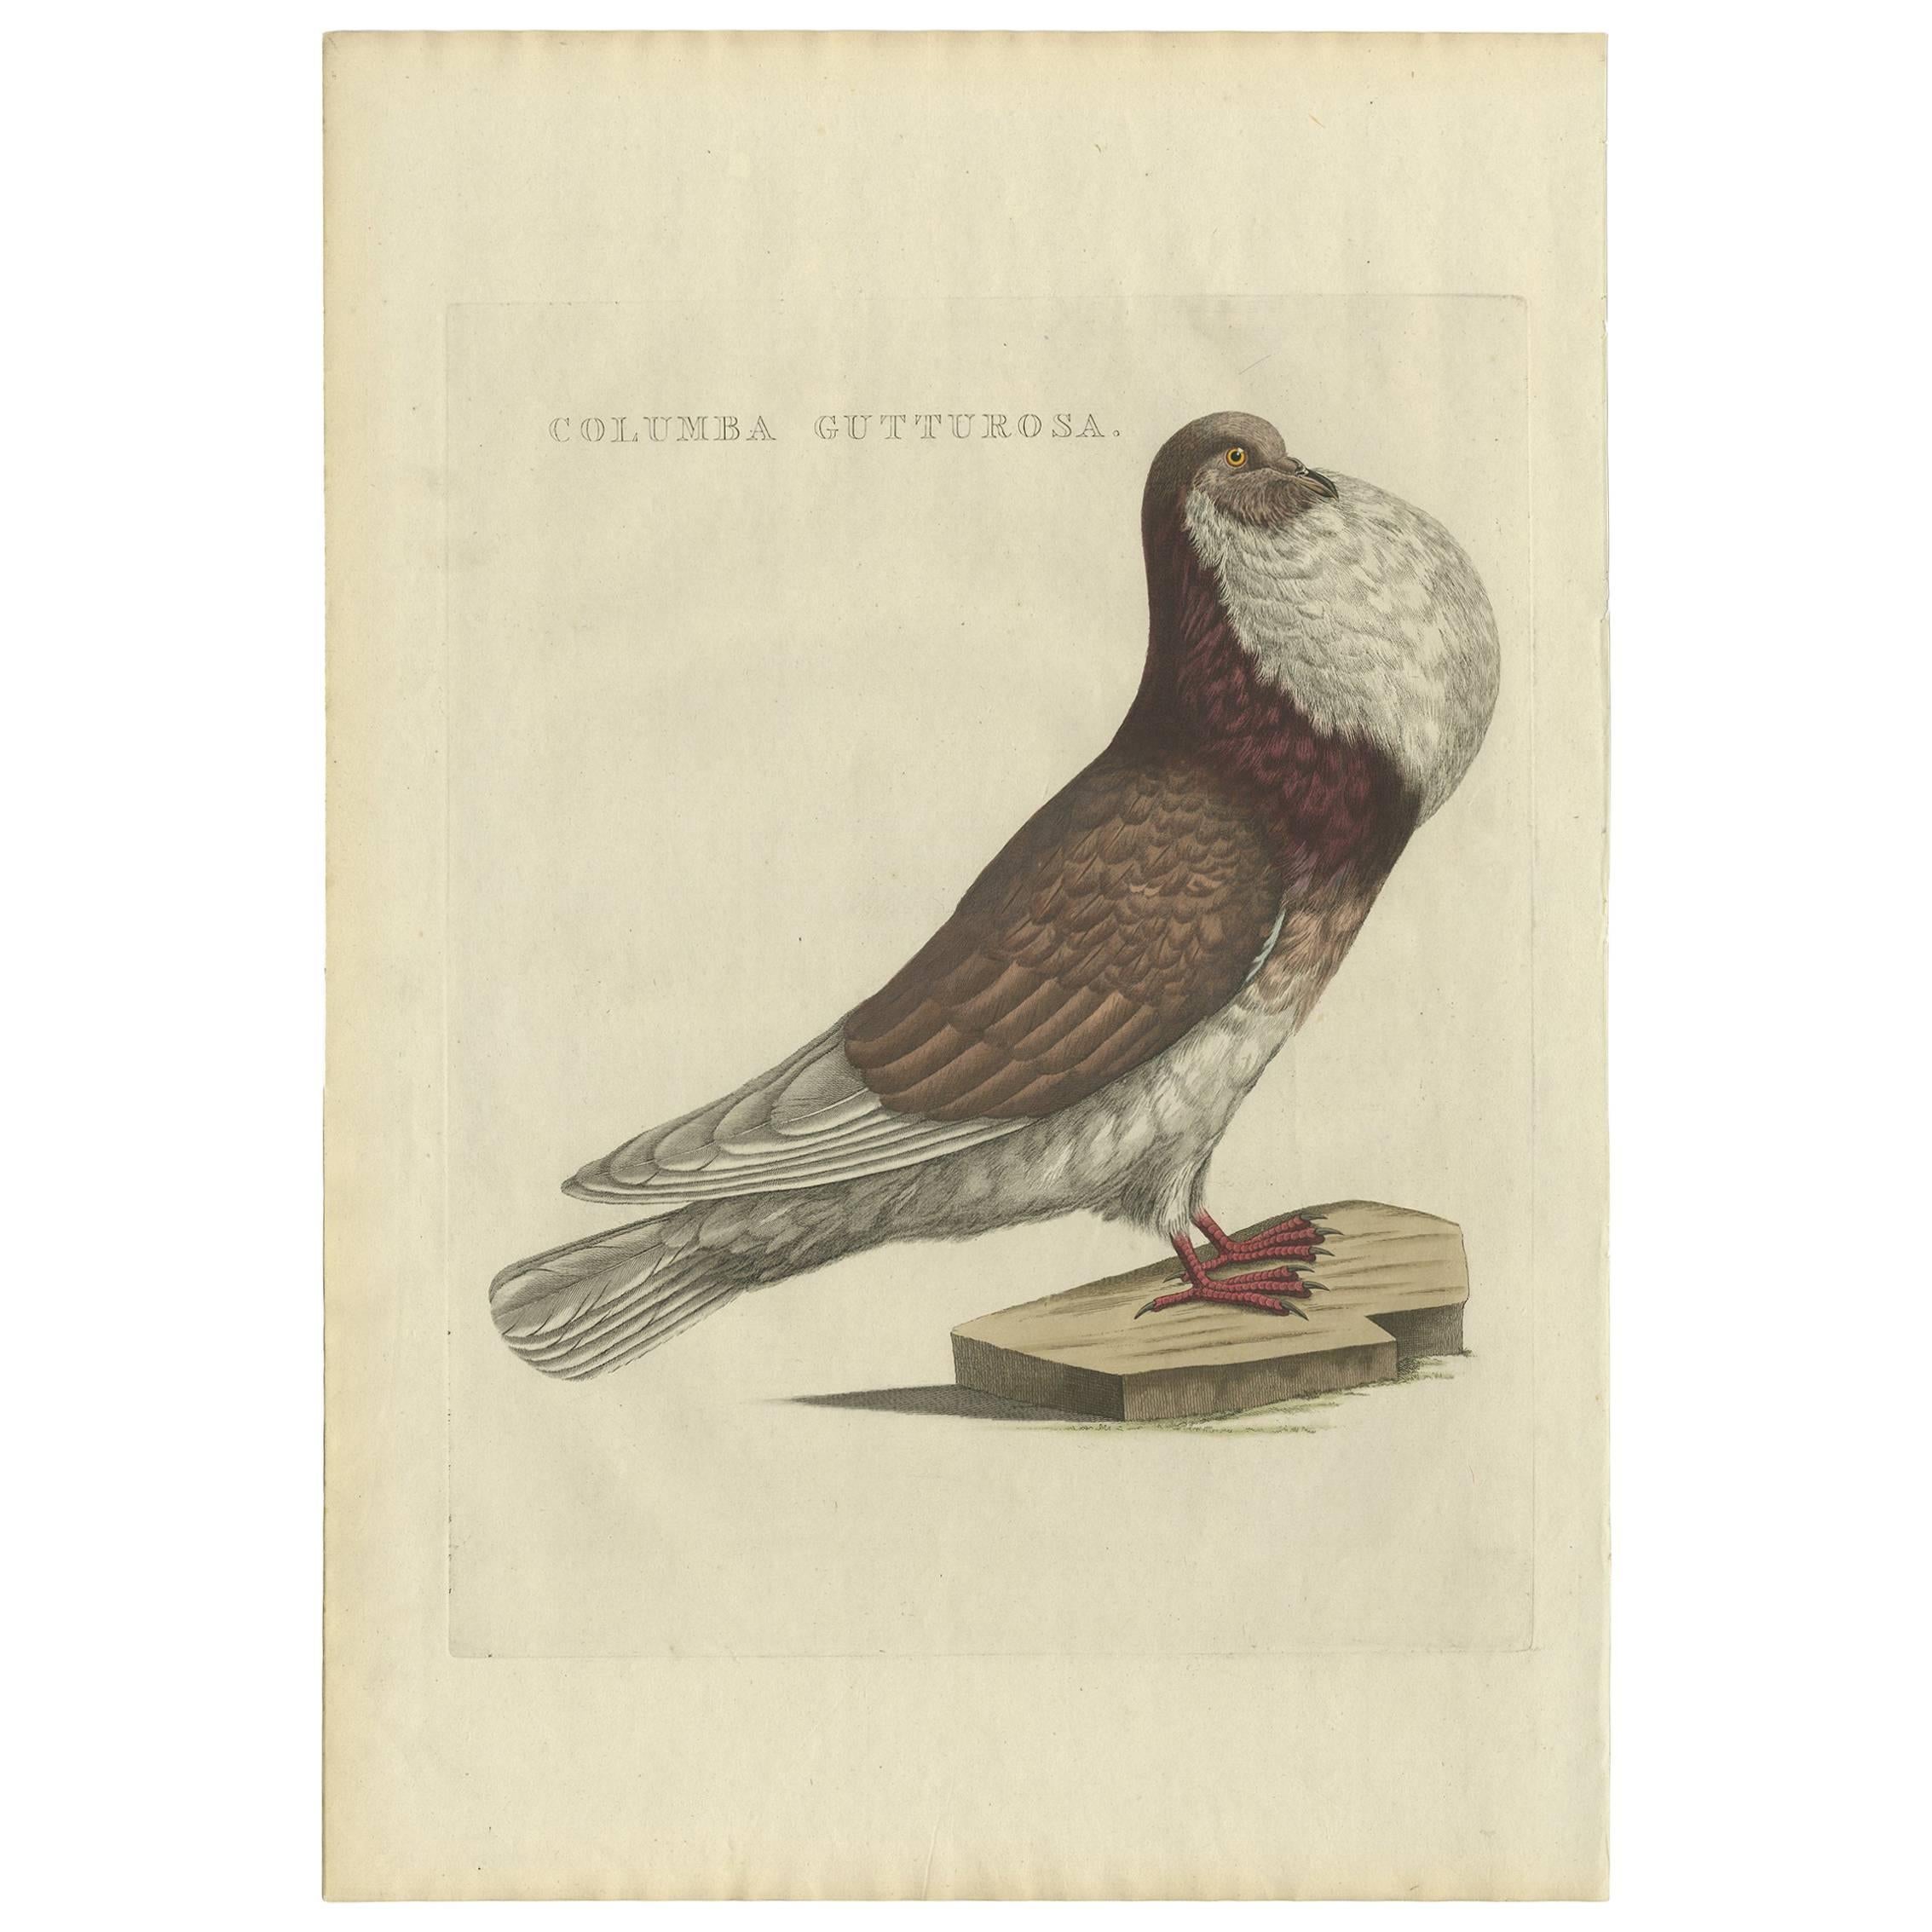 Impression oiseau antique d'un pigeon en forme de cuivre par Sepp & Nozeman, 1829